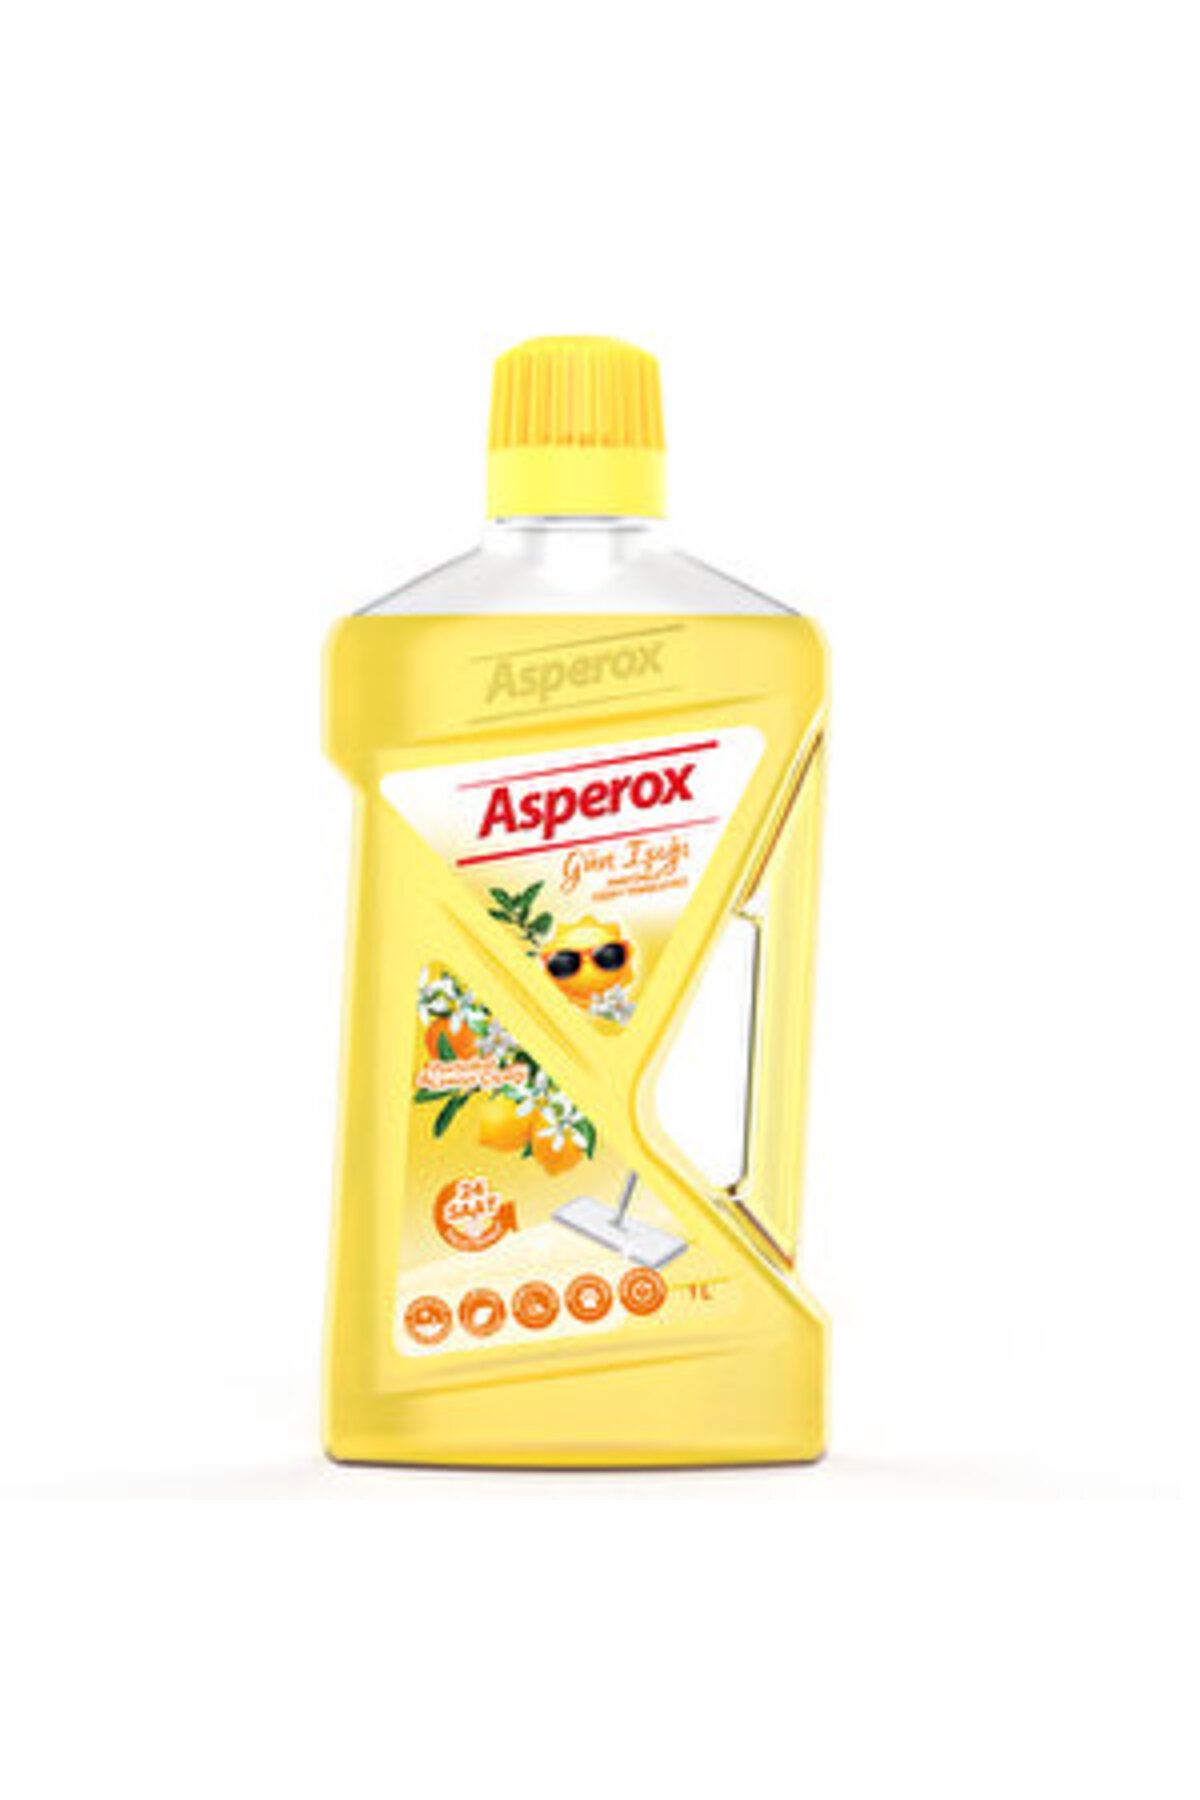 ASPEROX ( 1 ADET ) Asperox Yüzey Temizleyici Gün Işığı 1 L (Sarı)